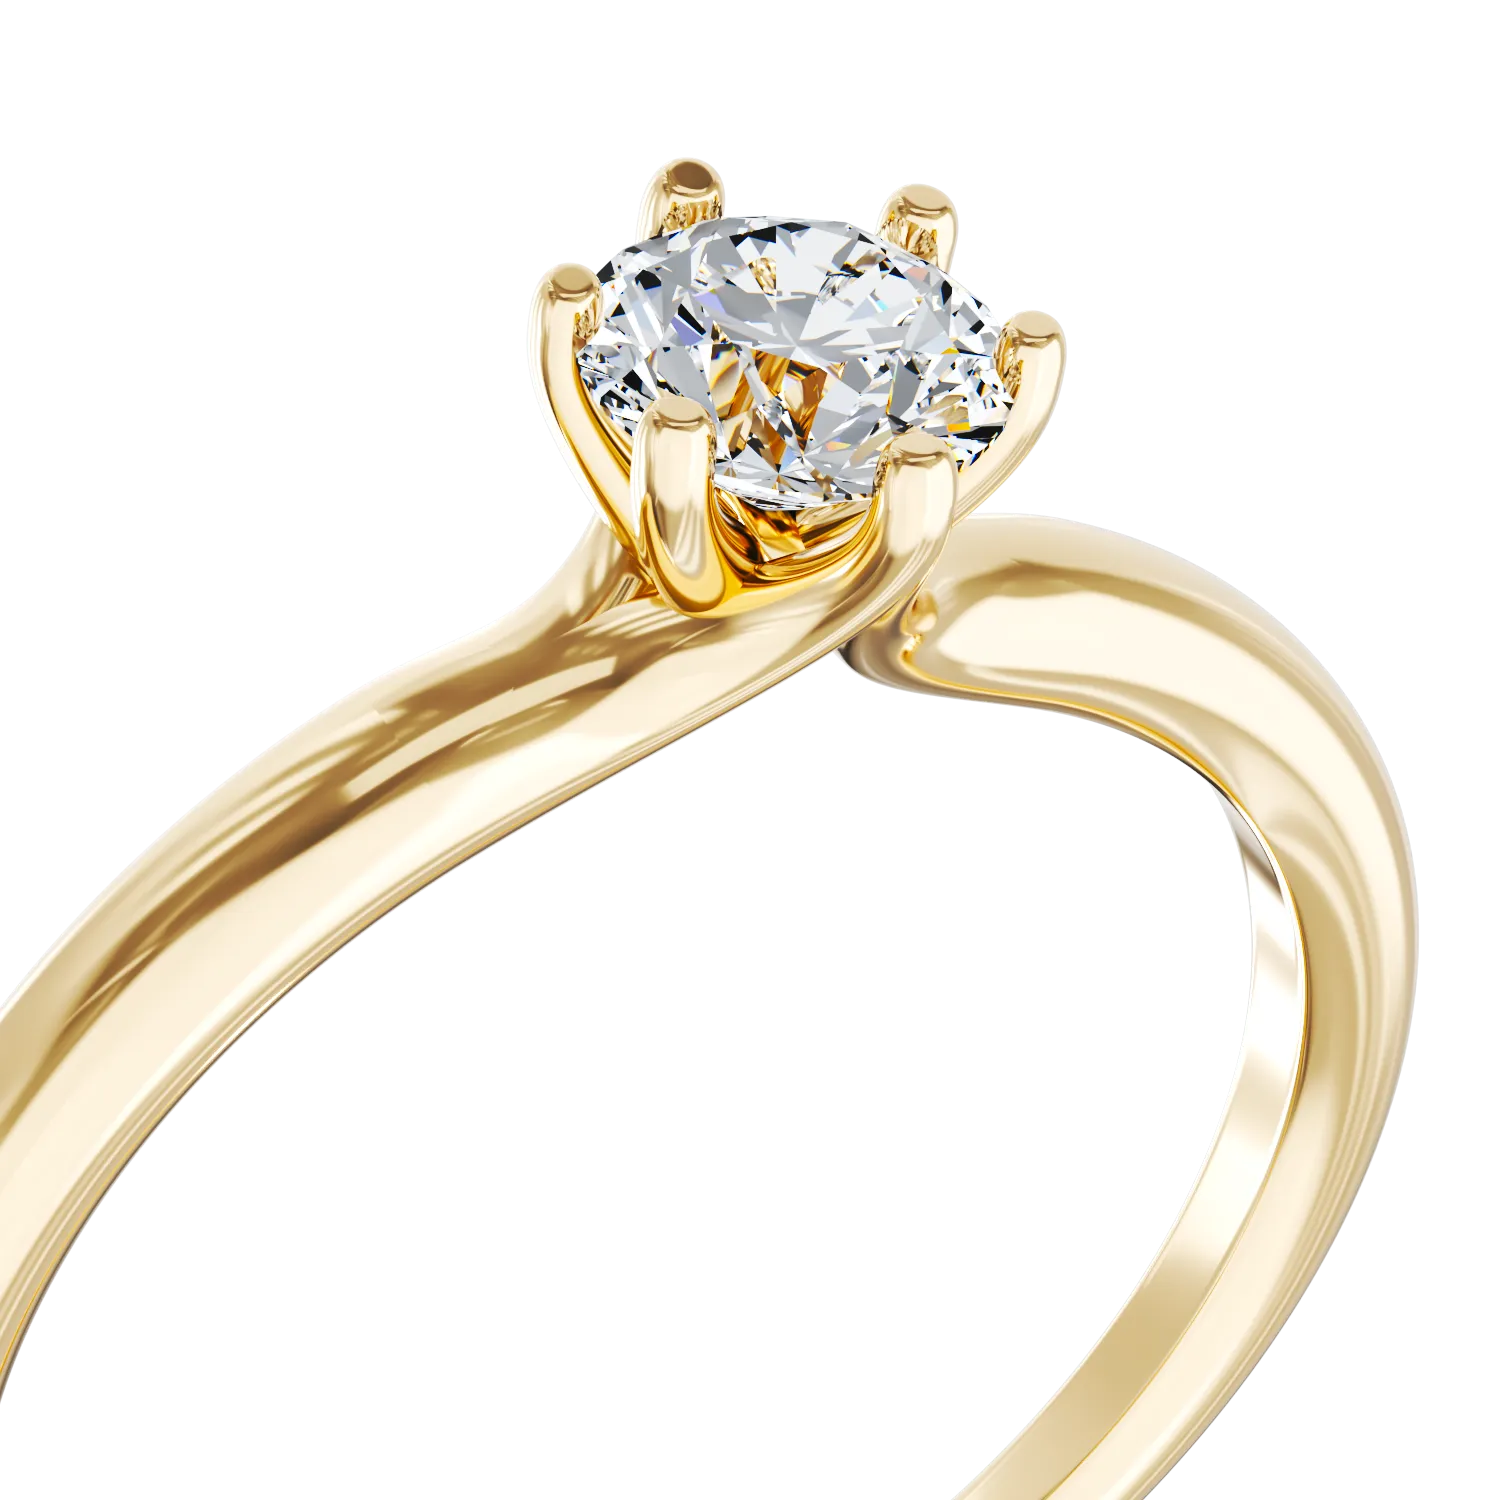 Eljegyzési gyűrű 18K-os sárga aranyból 0,3ct gyémánttal. Gramm: 2,20